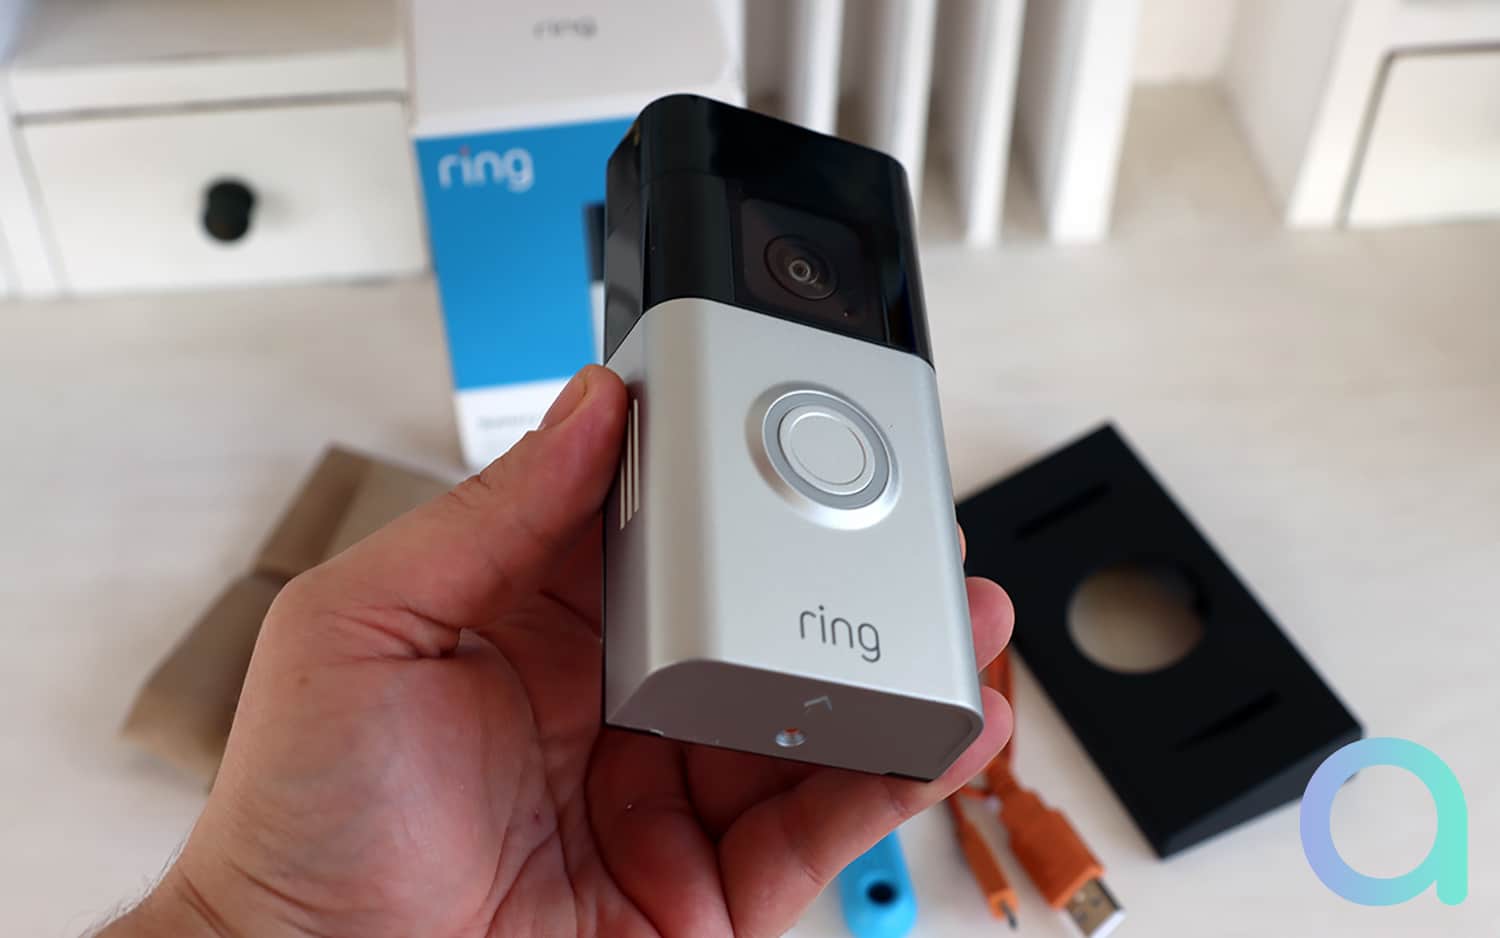 Test Ring Battery Doorbell Plus : une sonnette vidéo complète